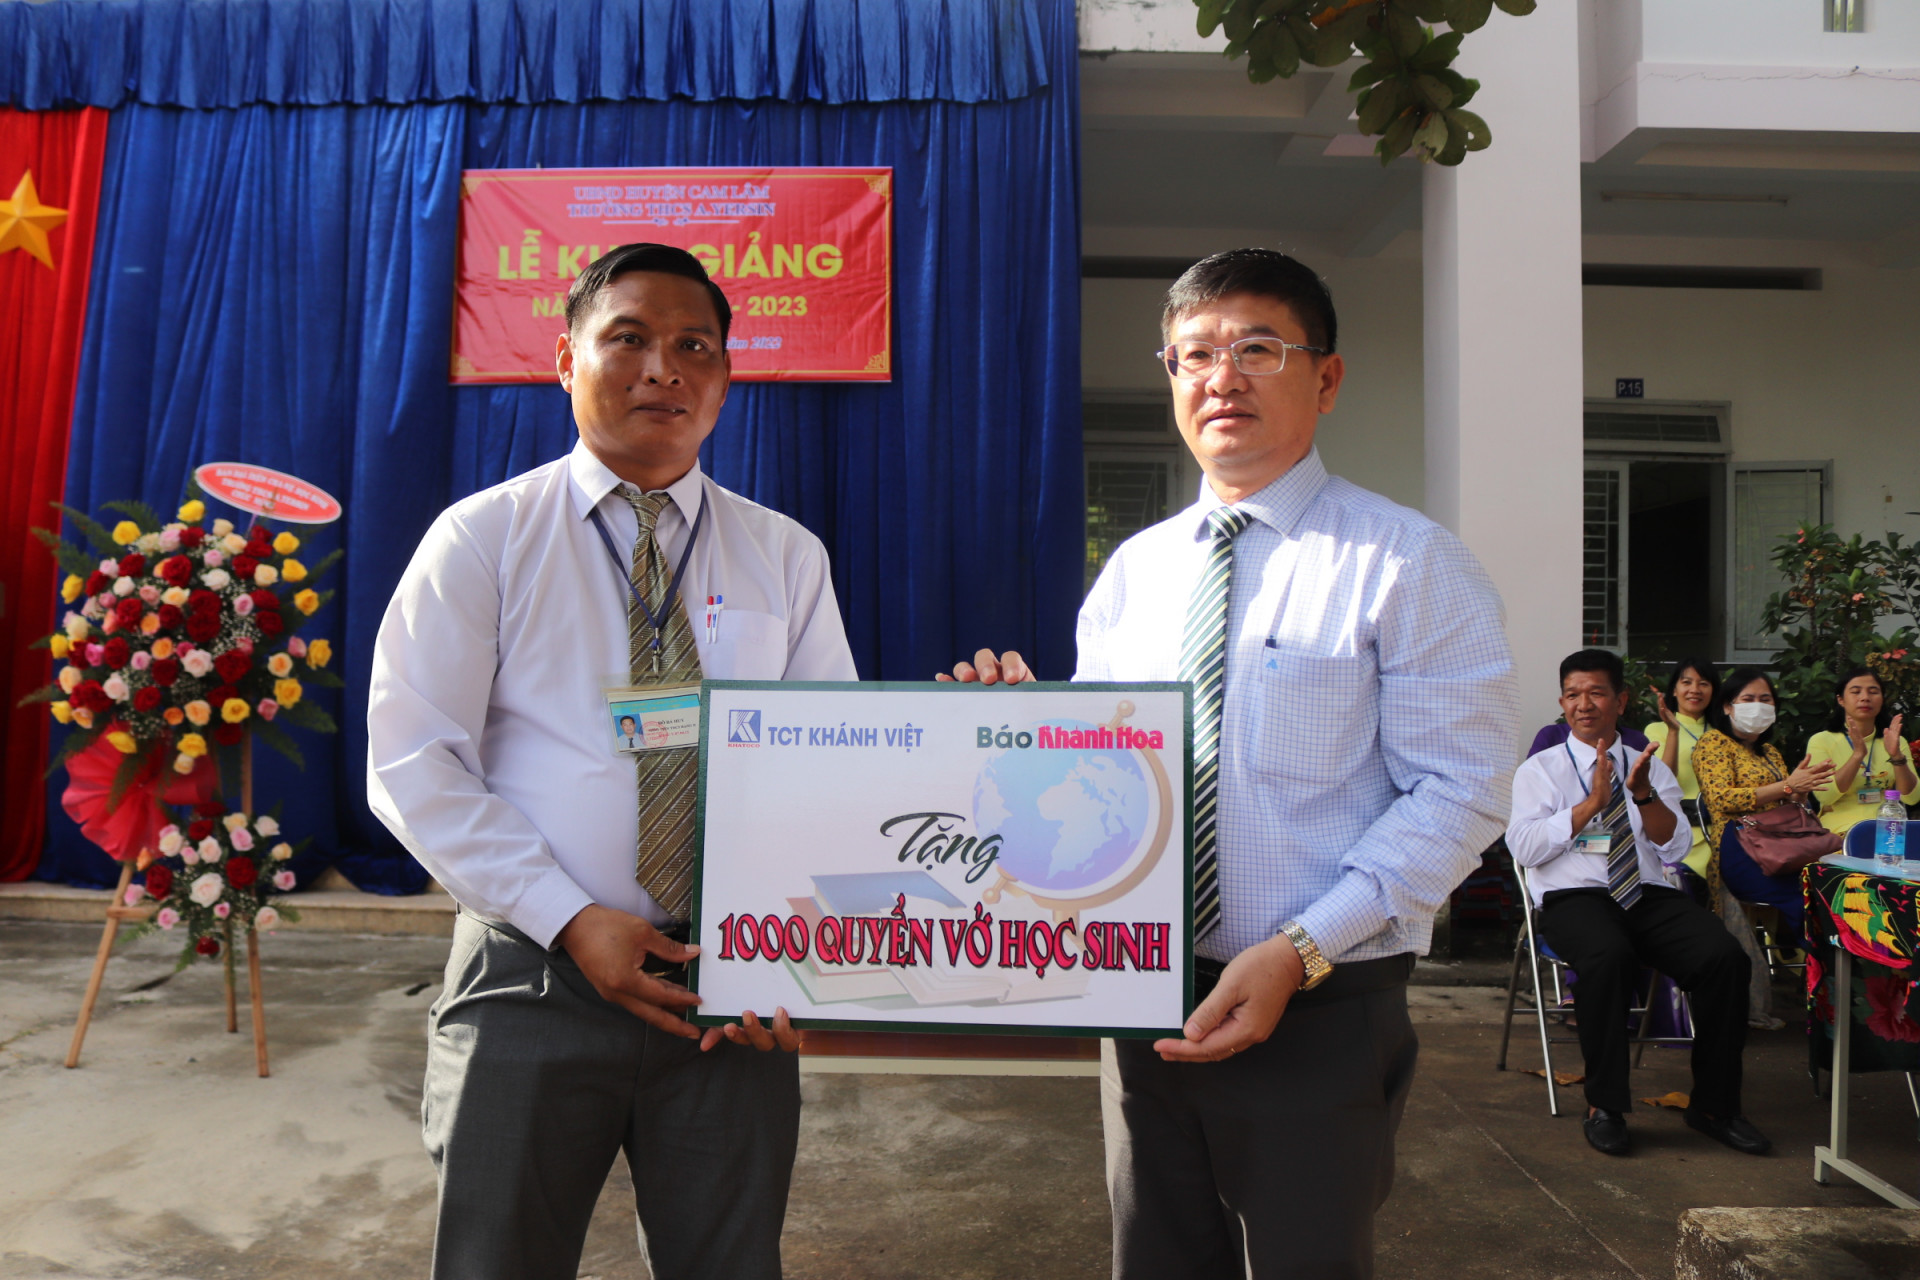 Báo Khánh Hòa và Tổng Công ty Khánh Việt tặng 1.000 quyển vở cho học sinh.